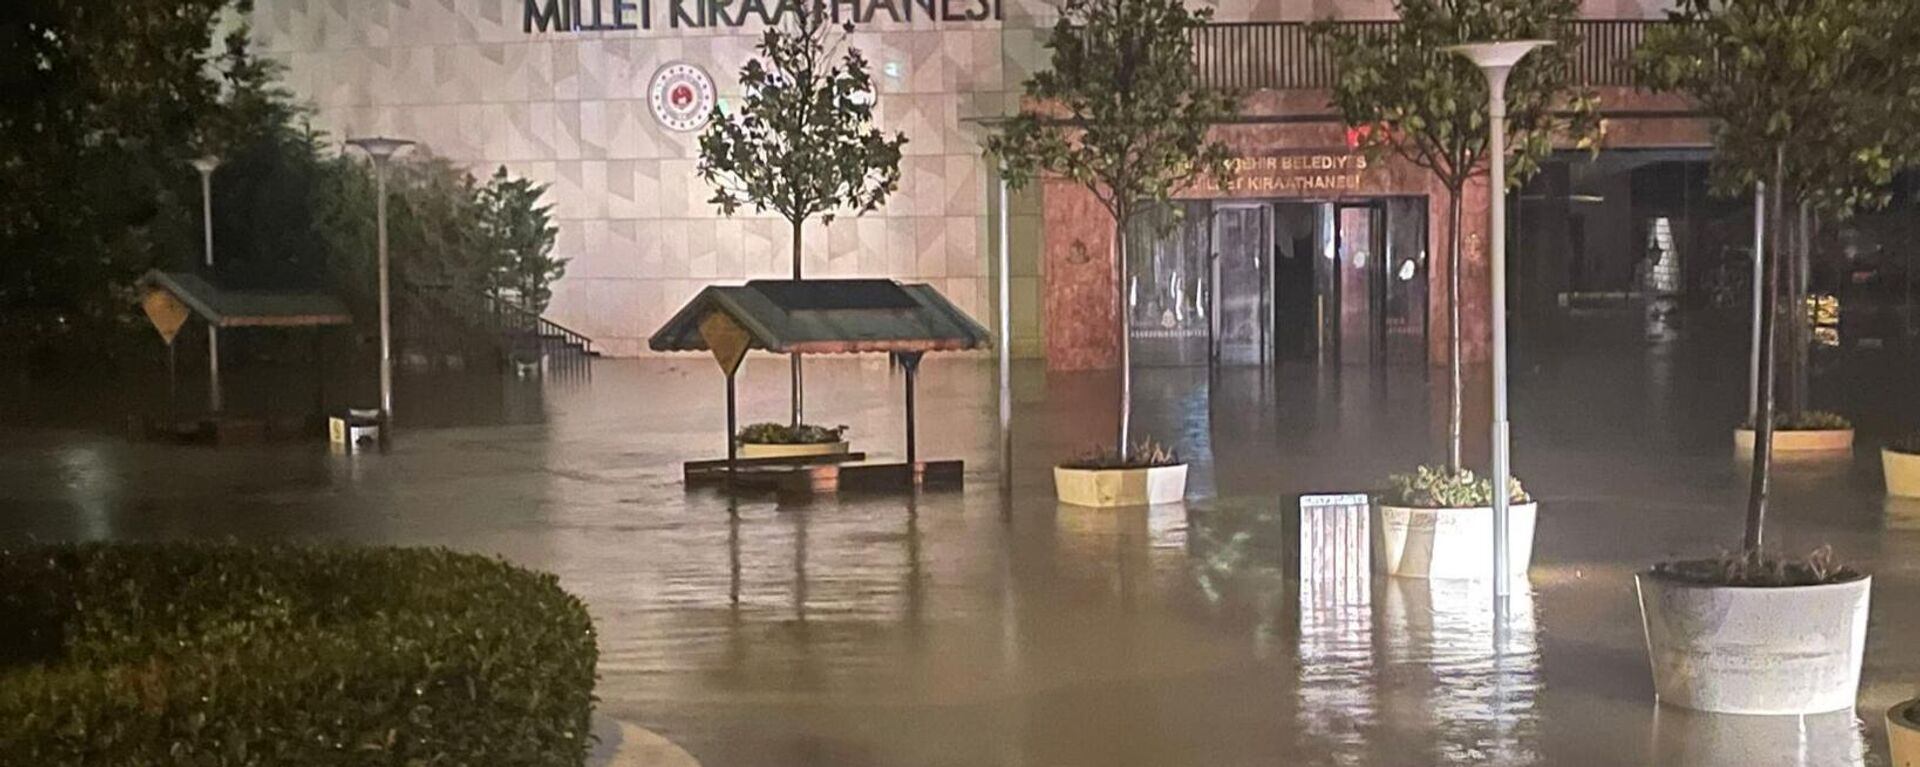 İstanbul'un Arnavutköy ve Başakşehir ilçelerinde etkili olan kuvvetli yağış nedeniyle yollarda su birikintileri oluştu, sürücüler ilerlemekte zorluk çekti. Başakşehir Millet Kıraathanesi'nde yaşanan su baskını sonrası belediye ekiplerince vatandaşlar buradan tahliye edildi.
 - Sputnik Türkiye, 1920, 05.09.2023